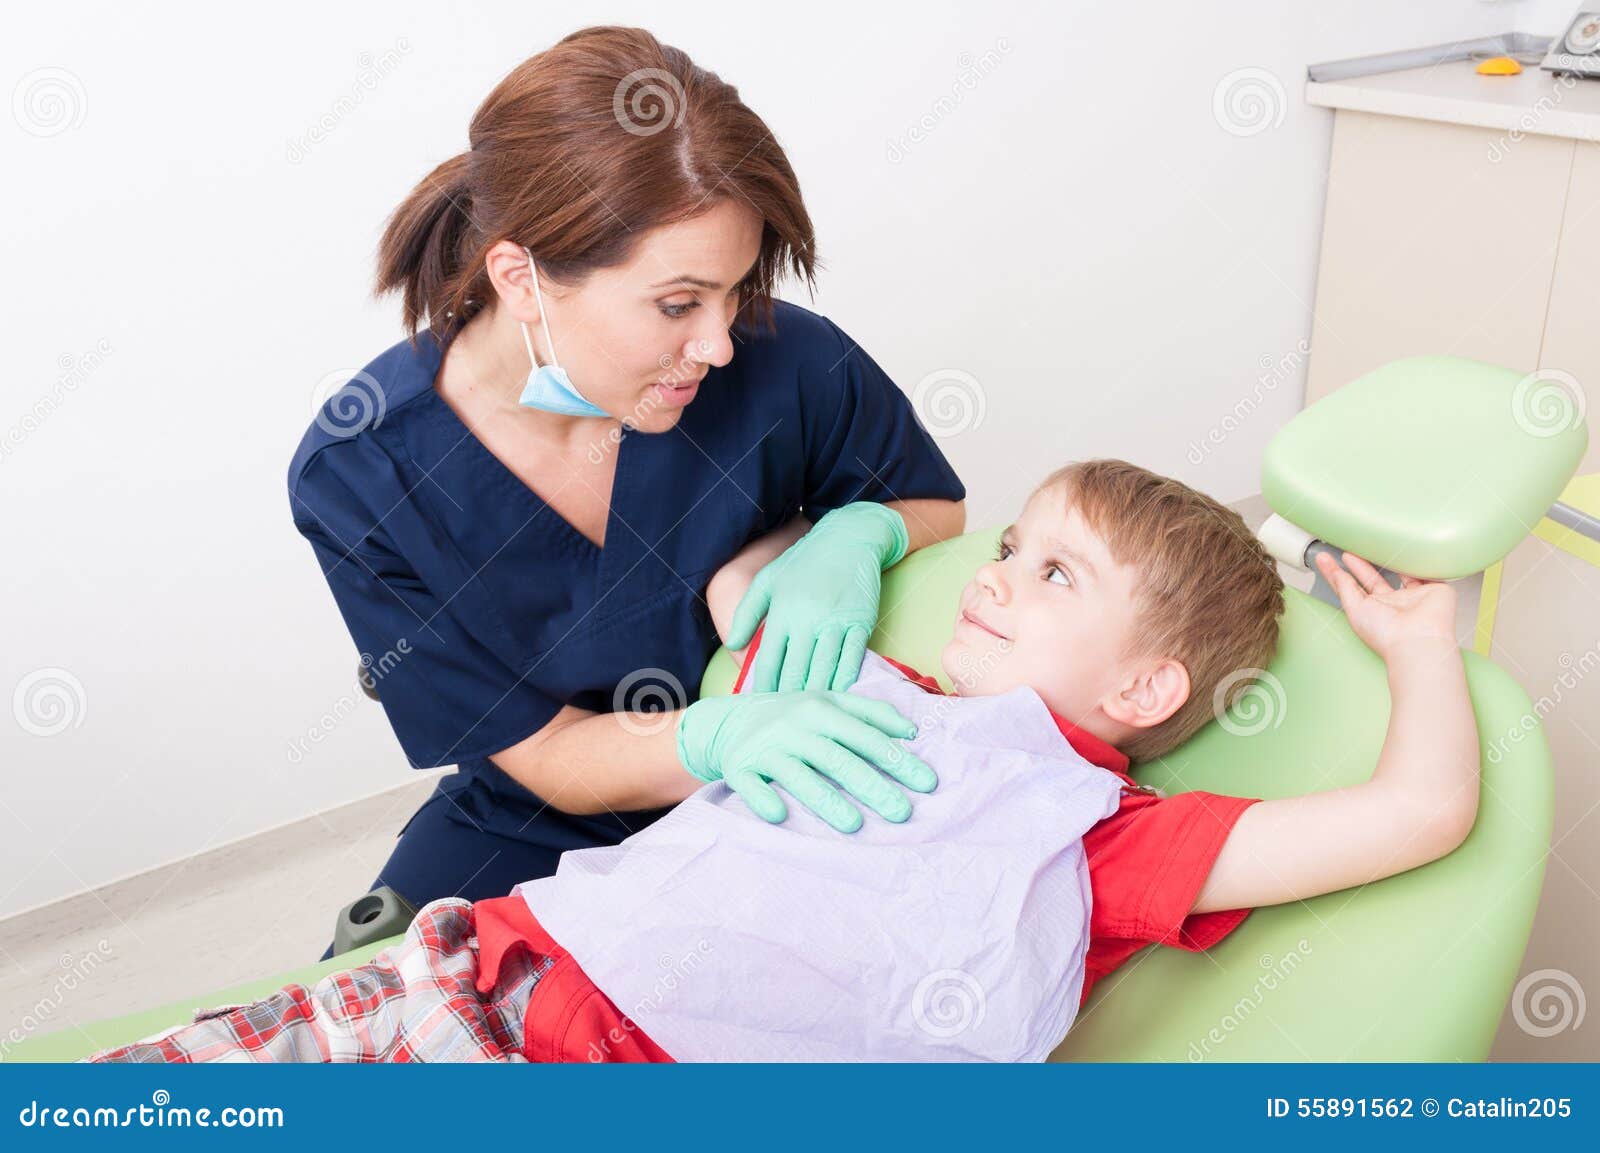 Zahnarztfrau, die mit Kinderpatienten spricht. Zahnarztfrauen, die mit Kinderpatienten sprechen, der im glücklichen Zahnarztstuhl sitzt